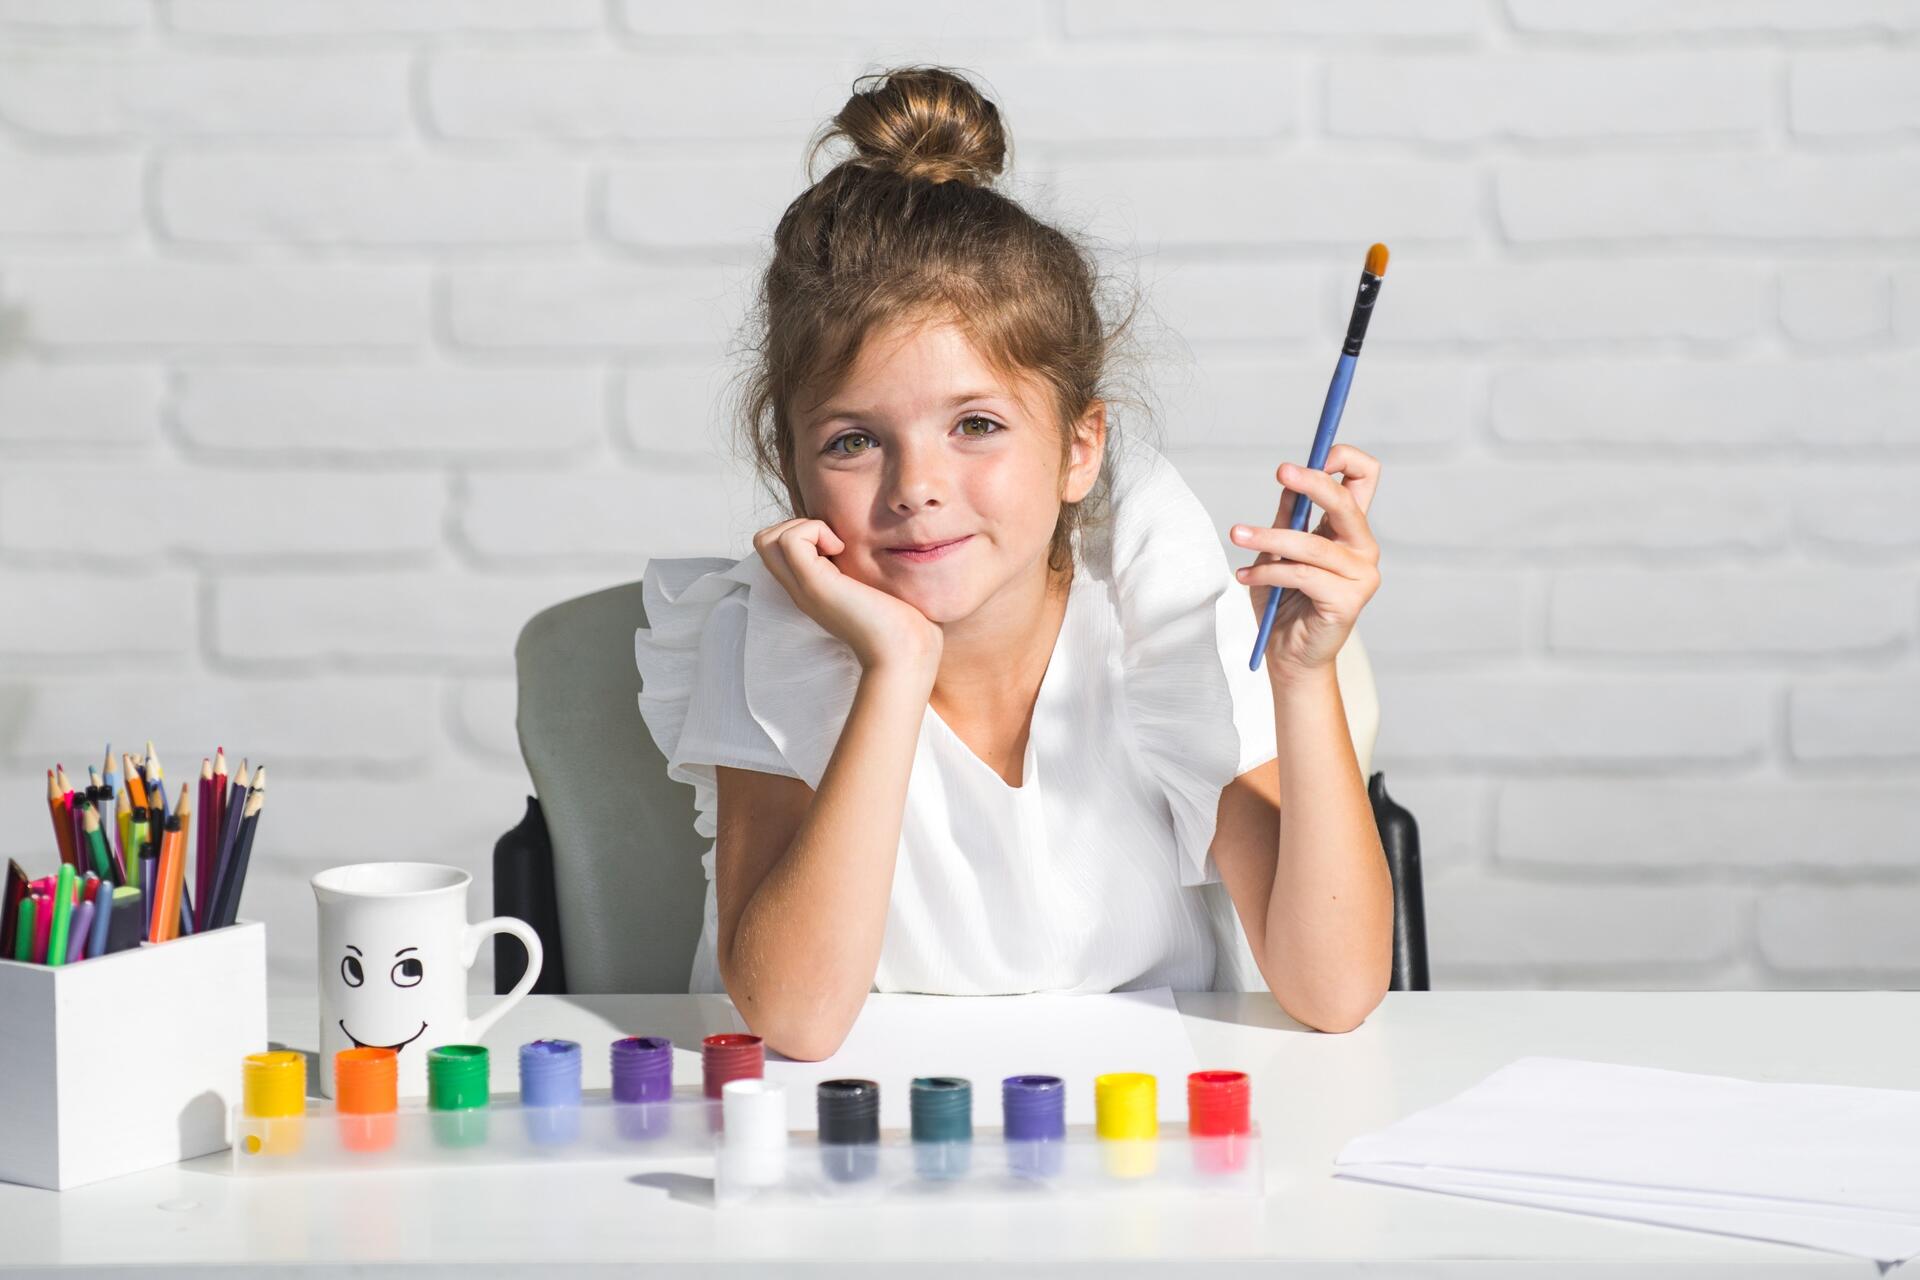 Раскраски по образцу - полезное и развивающее занятие для детей для усидчивости и внимания